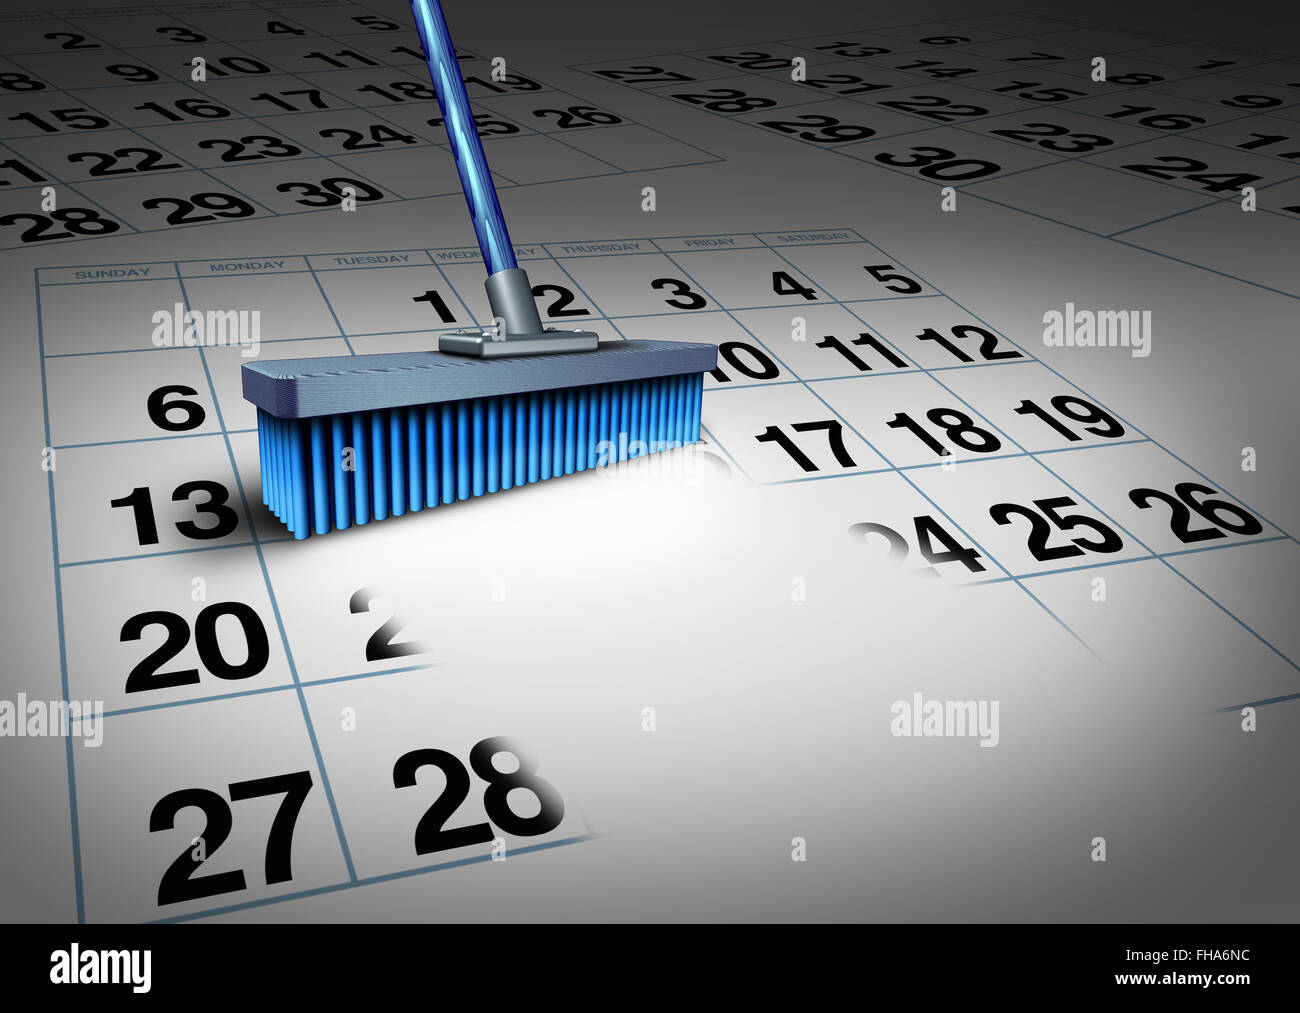 Borrar la programación concepto de negocio y reducir una semana de trabajo símbolo como una escoba borrado de un calendario como una fecha calendario metáfora para la gestión del tiempo o el nombramiento de la cancelación. Foto de stock